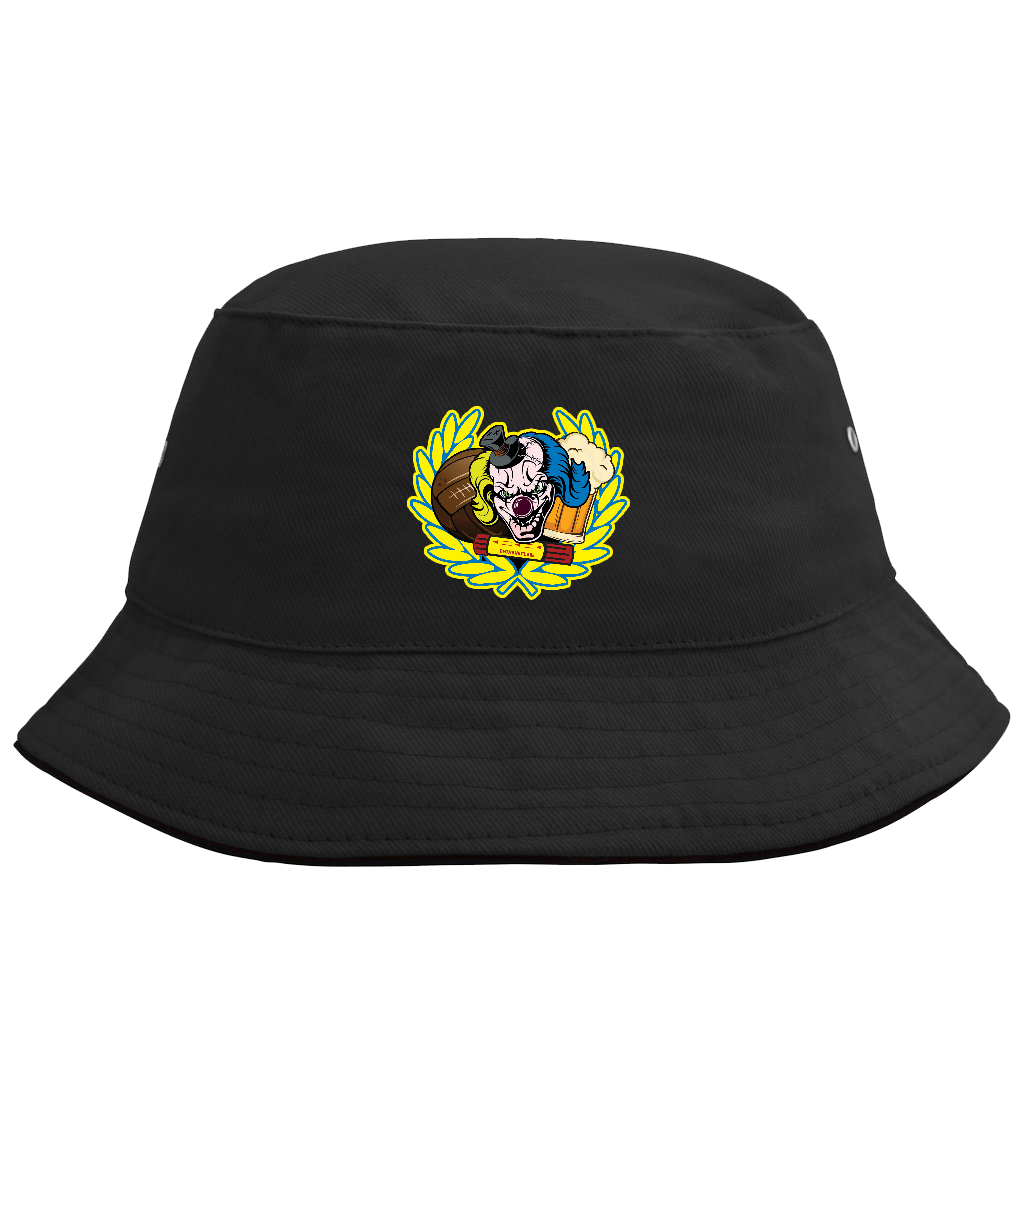 Bucket hat - Brigada